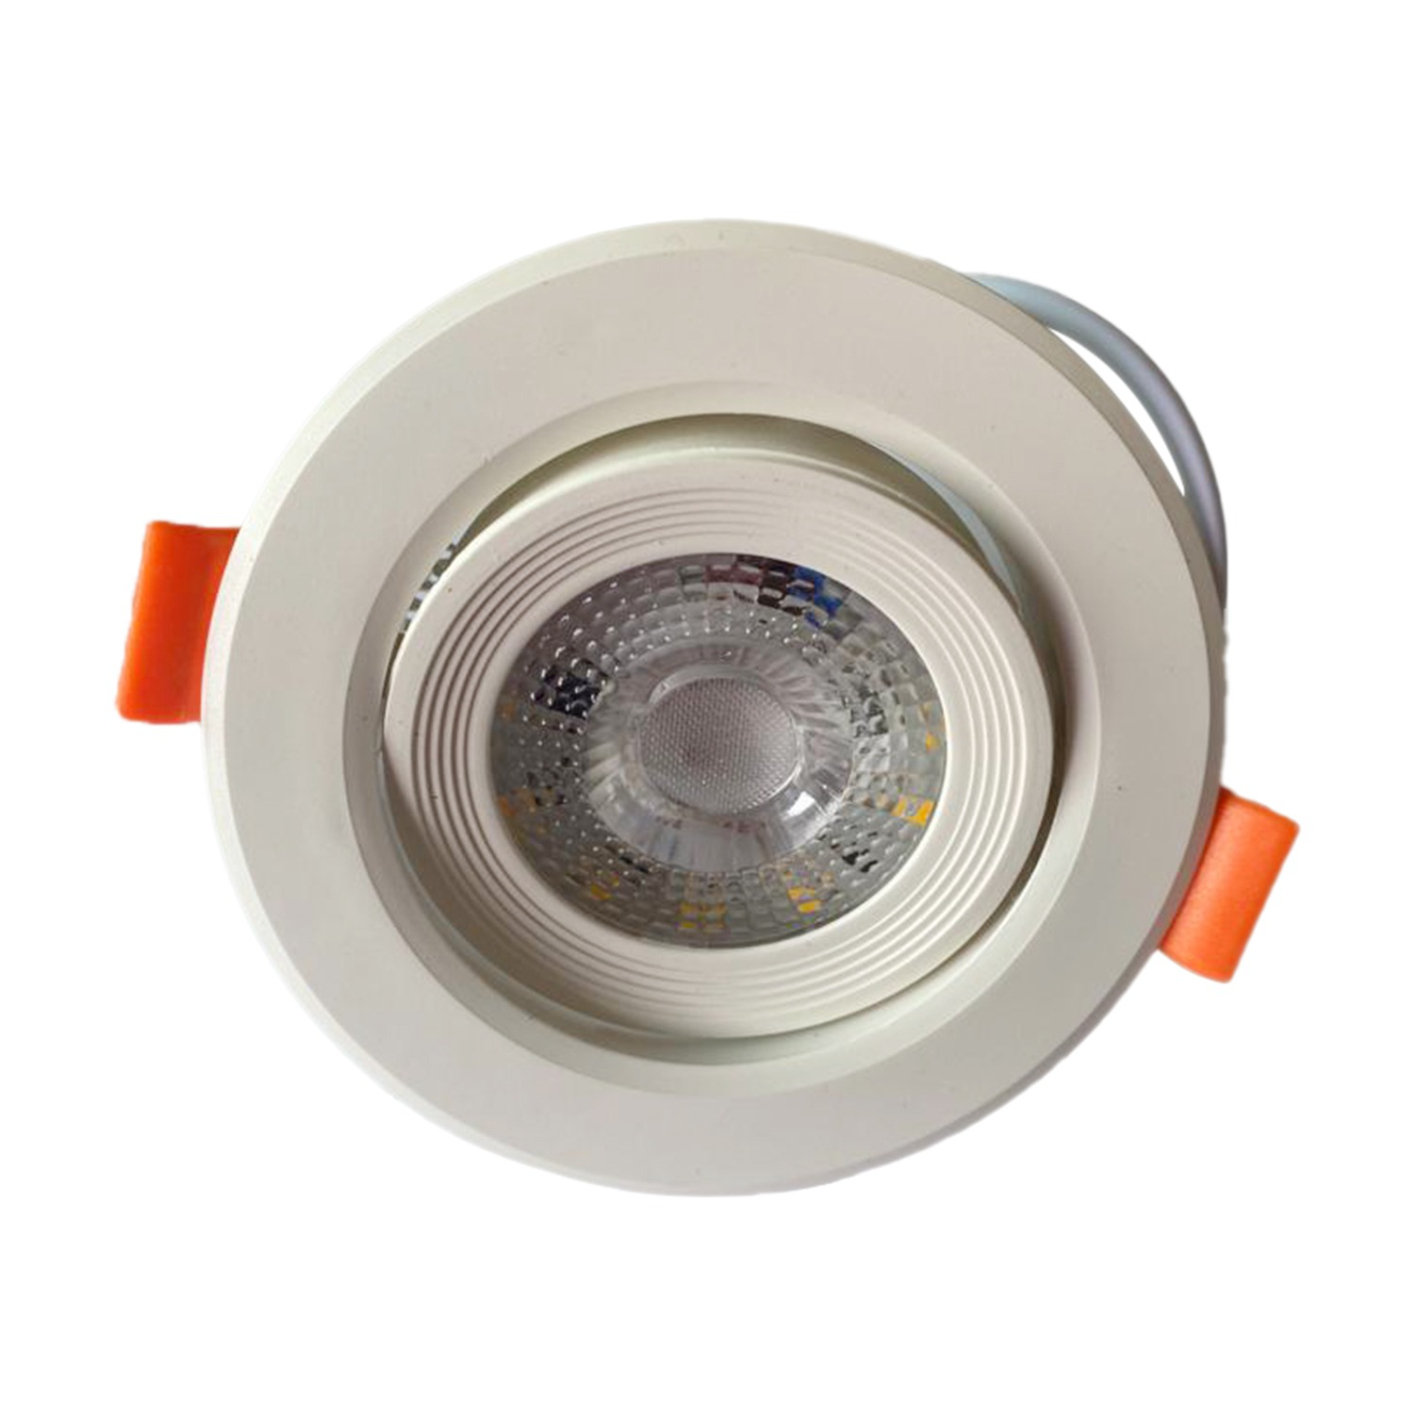 Raspo LED Downlight 9W Lamp white AC 170-265V Spotlight Light Indoor Down Light